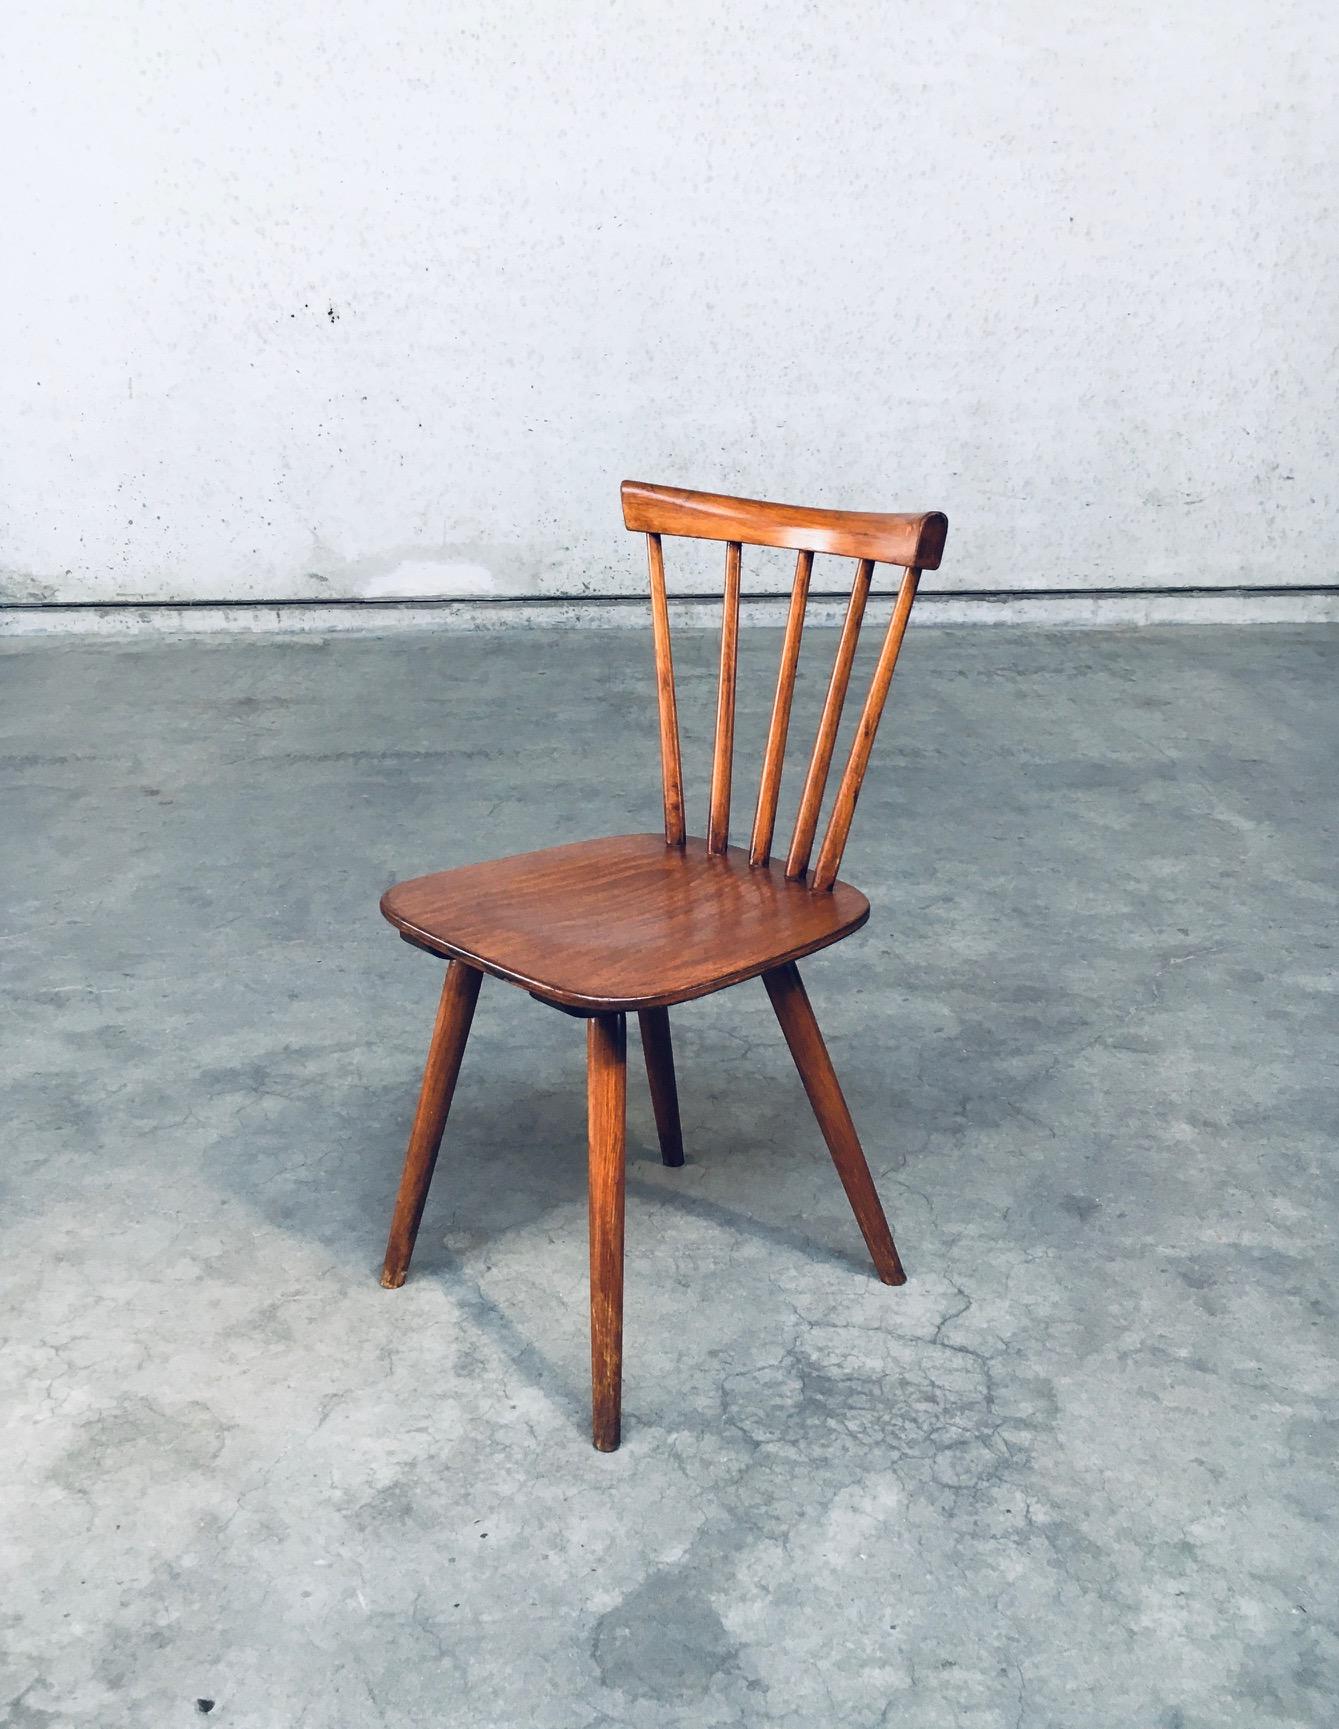 Midcentury Design Spindle Back Café 8 Chairs by Vervoort, Tilburg Netherlands 1